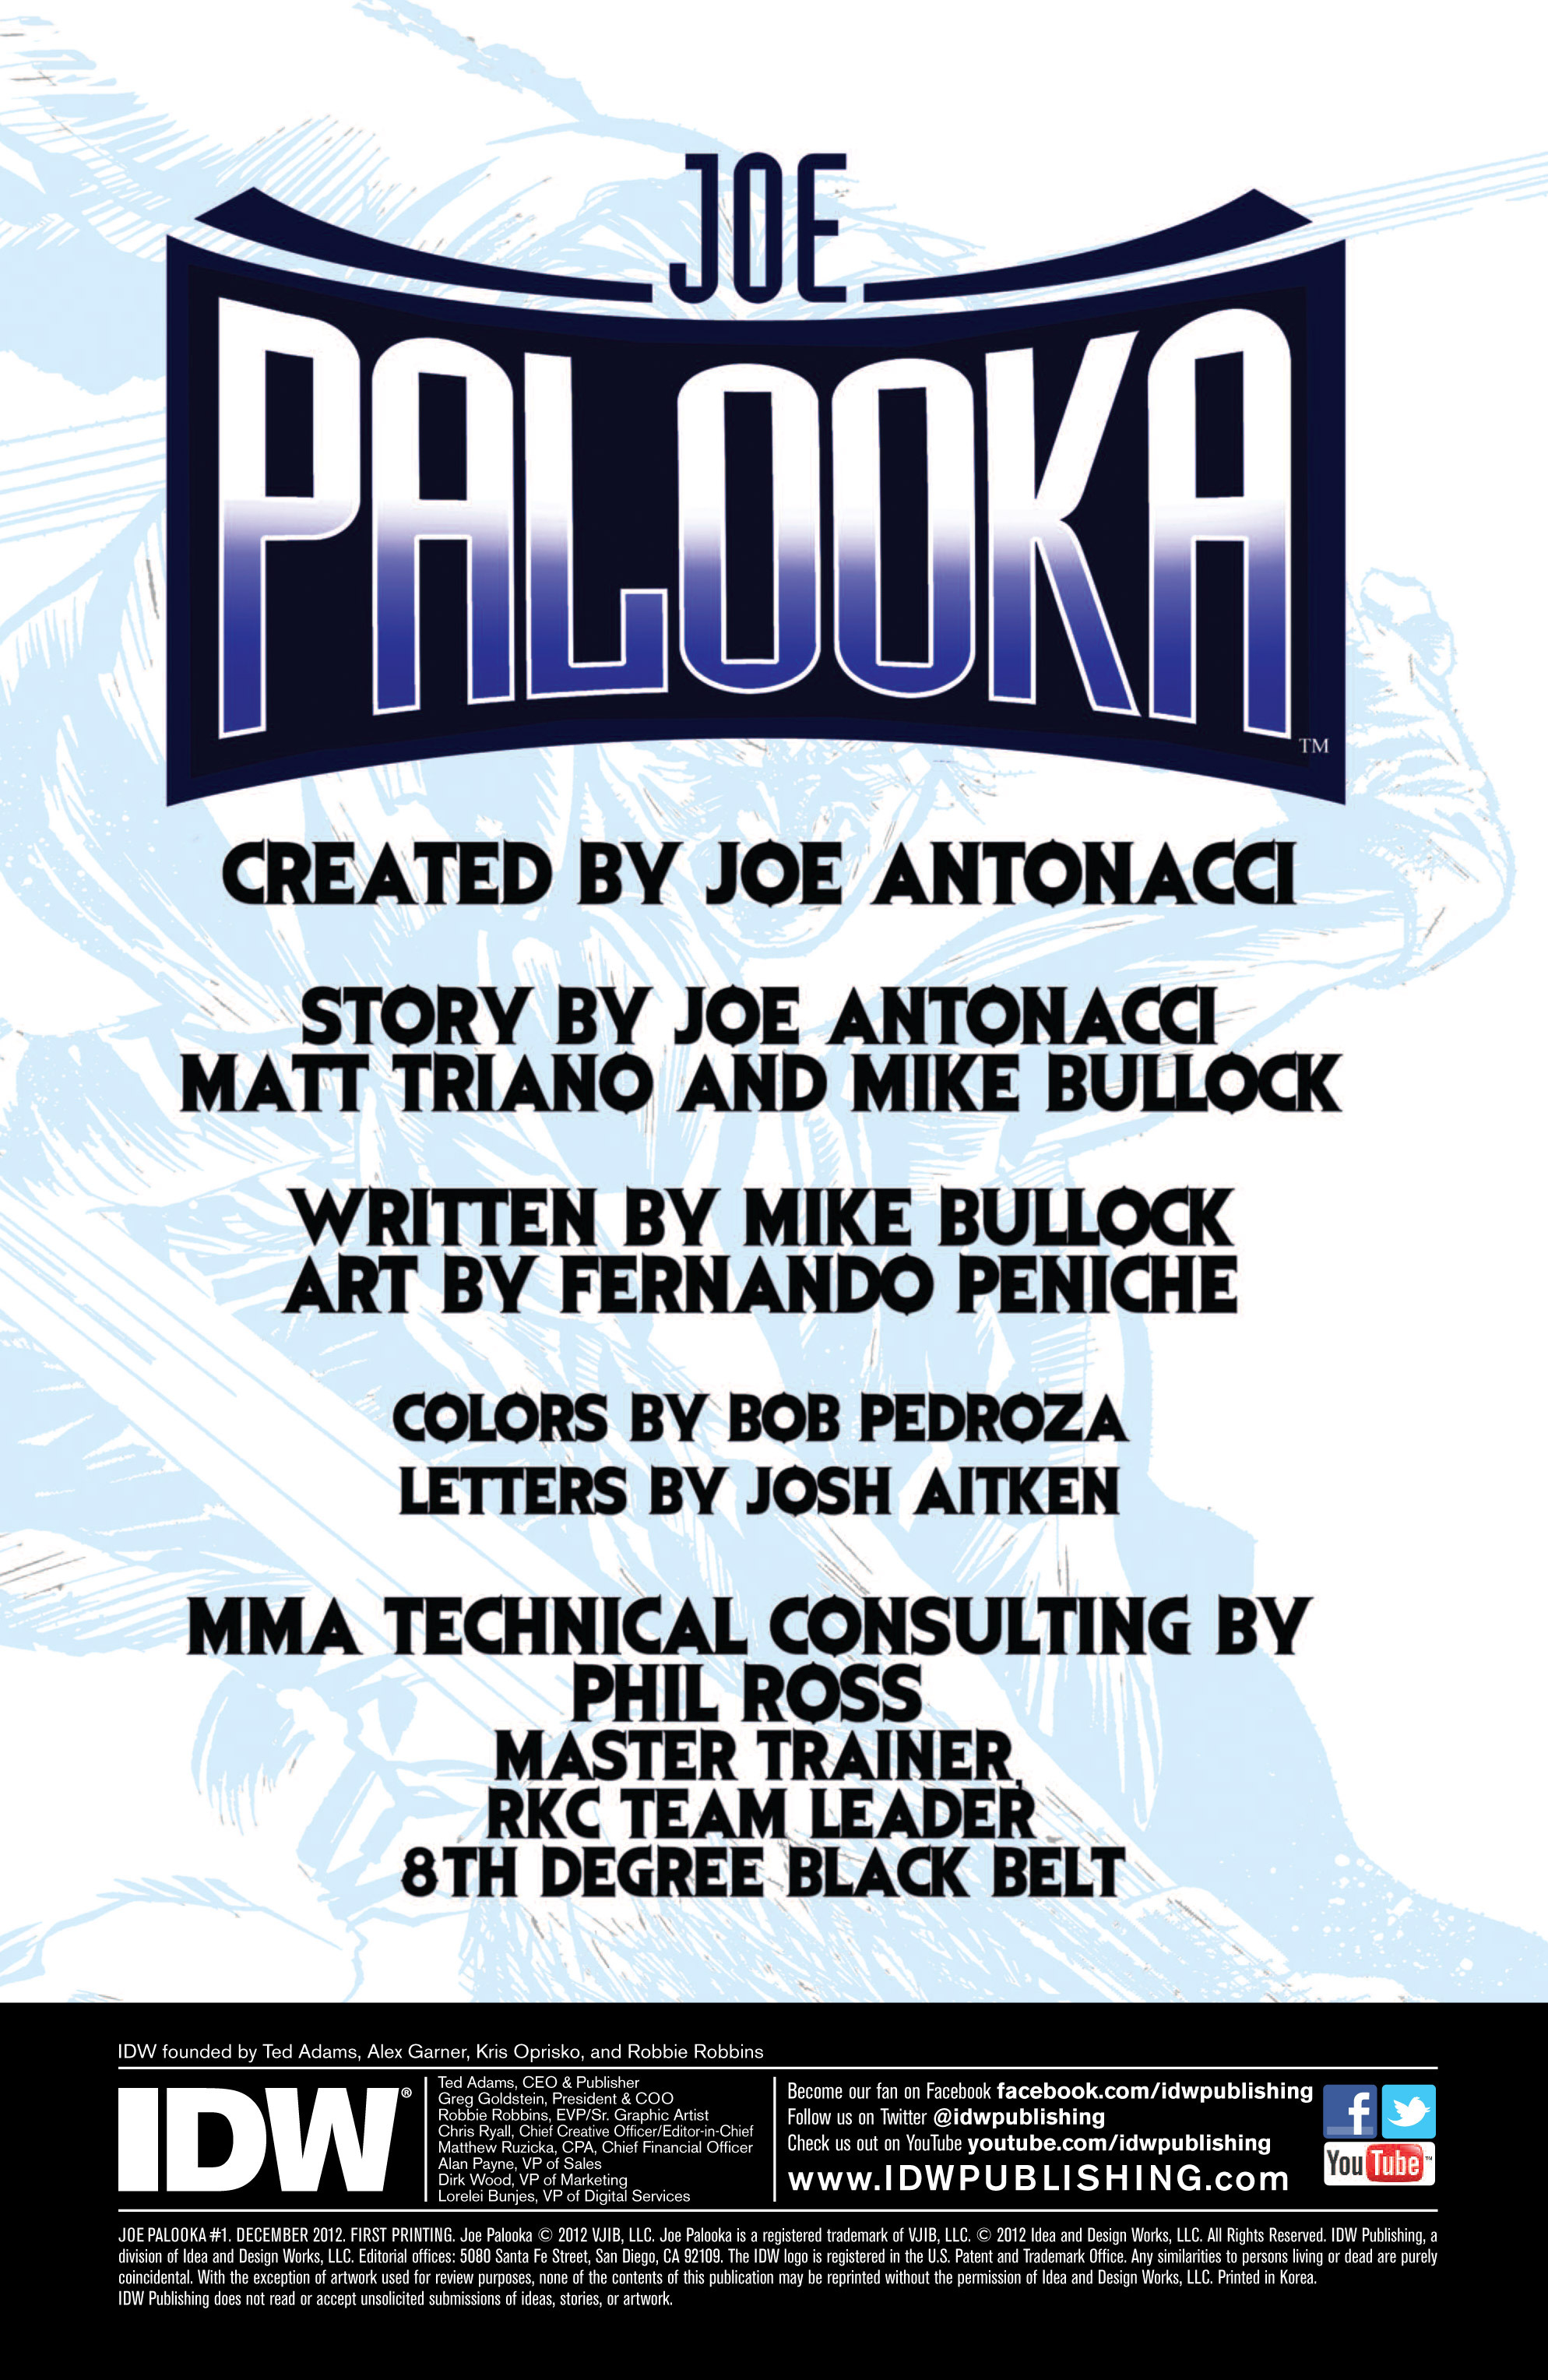 Read online Joe Palooka comic -  Issue #1 - 2